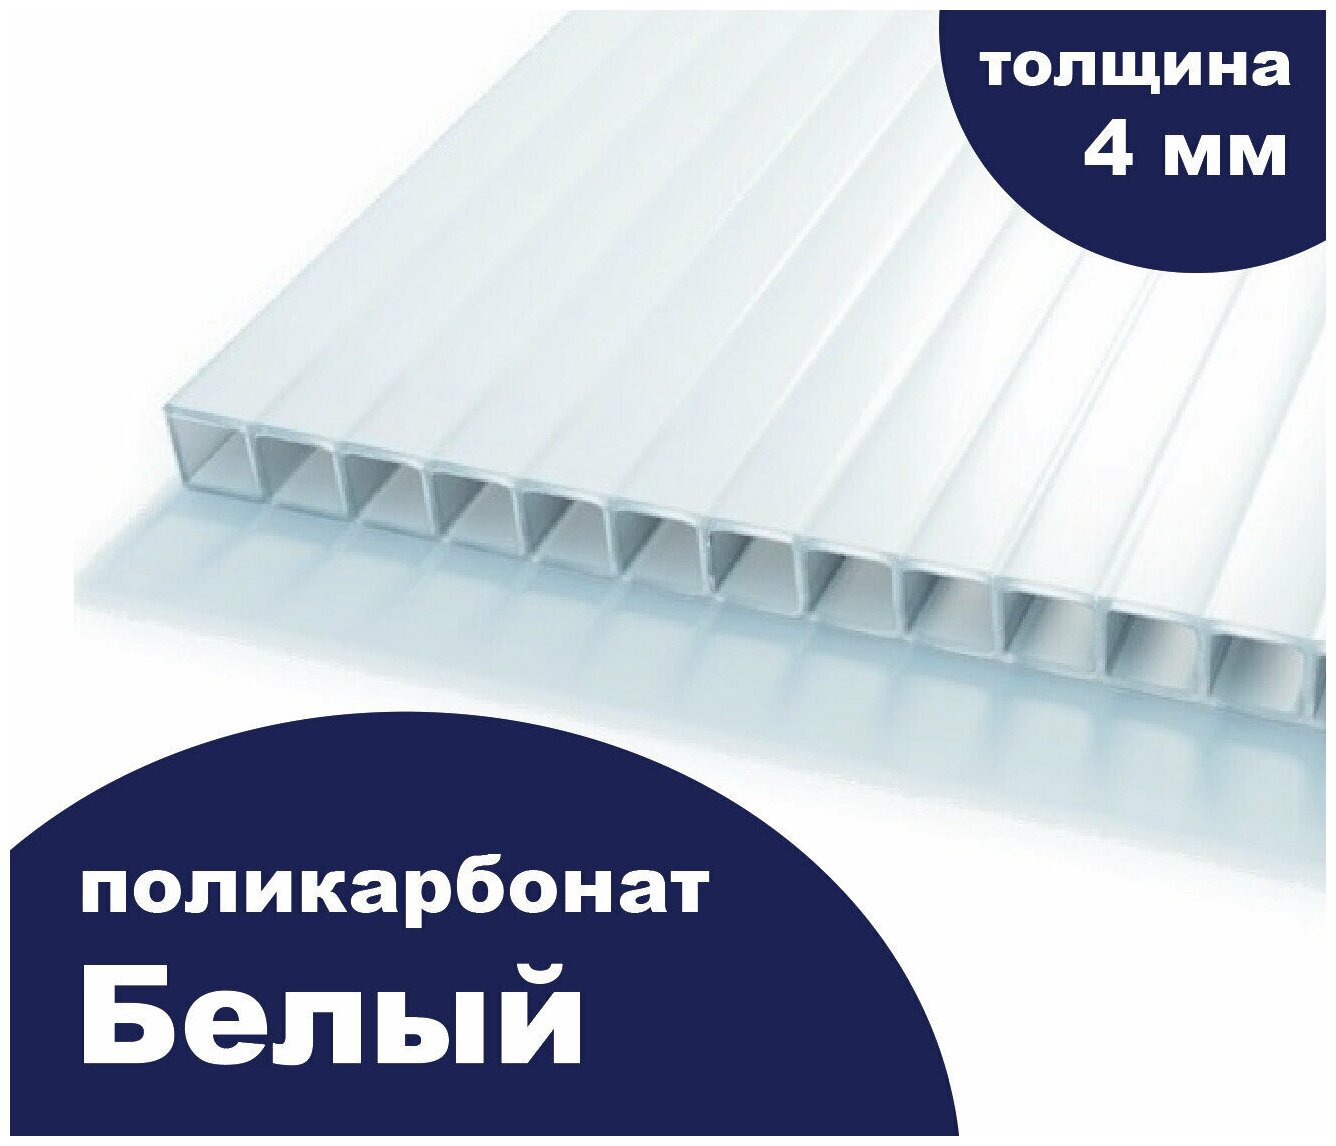 Сотовый поликарбонат цвет опал (белый рекламный), Ultramarin, 4 мм, 6 метров, 3 листа